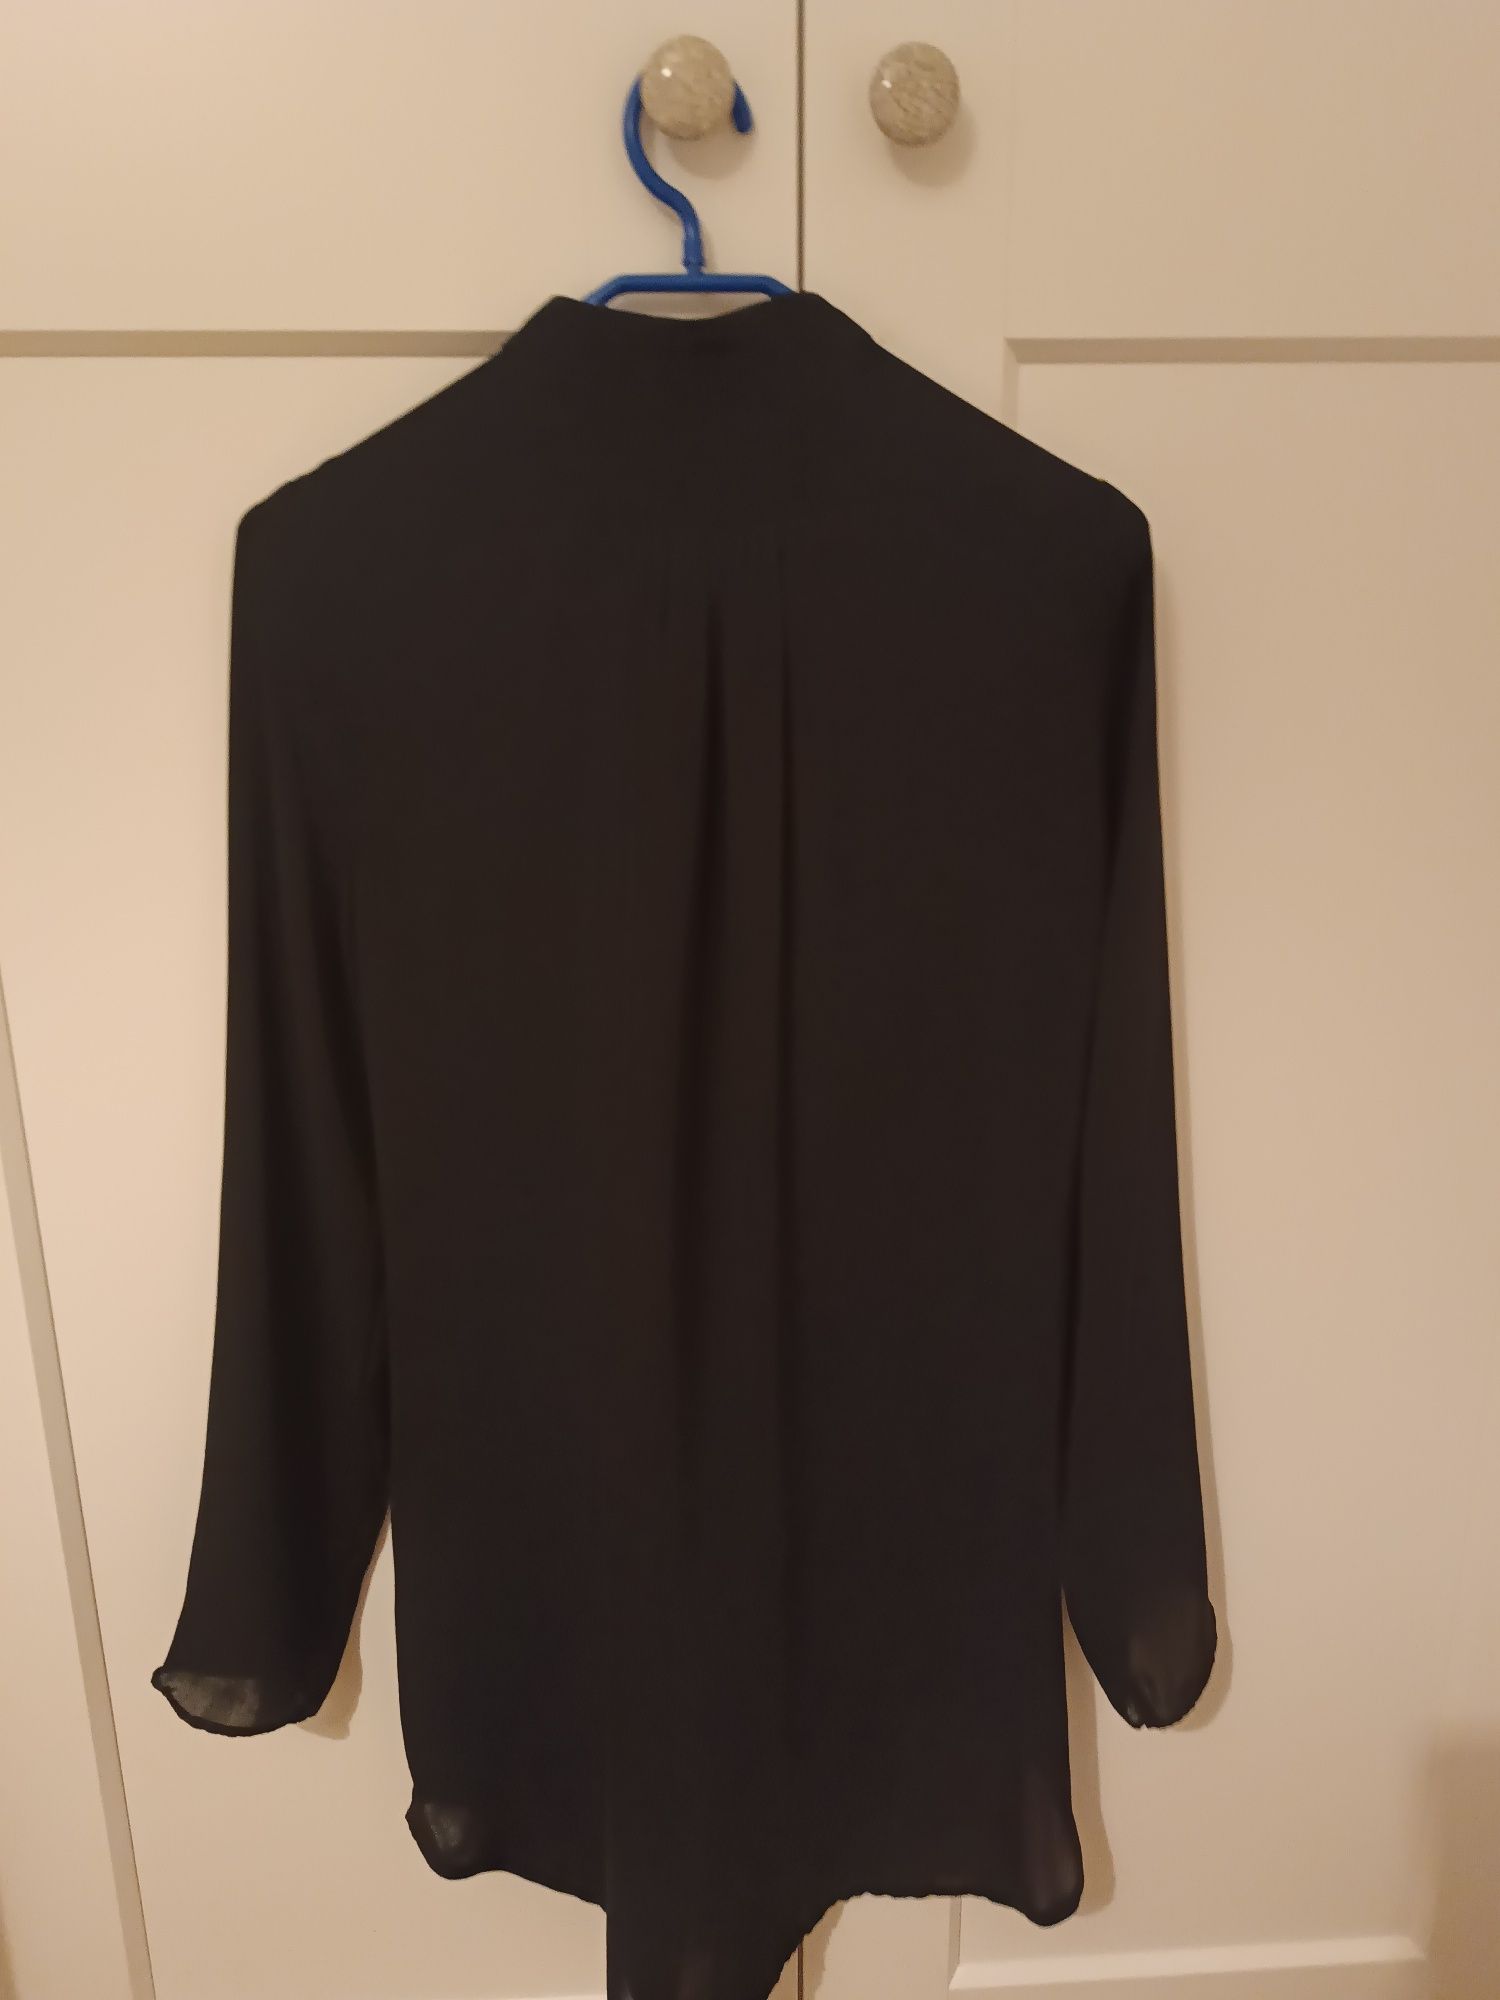 Koszula tunika szyfonowa Benetton r. 40 czarna żakardowa żabot